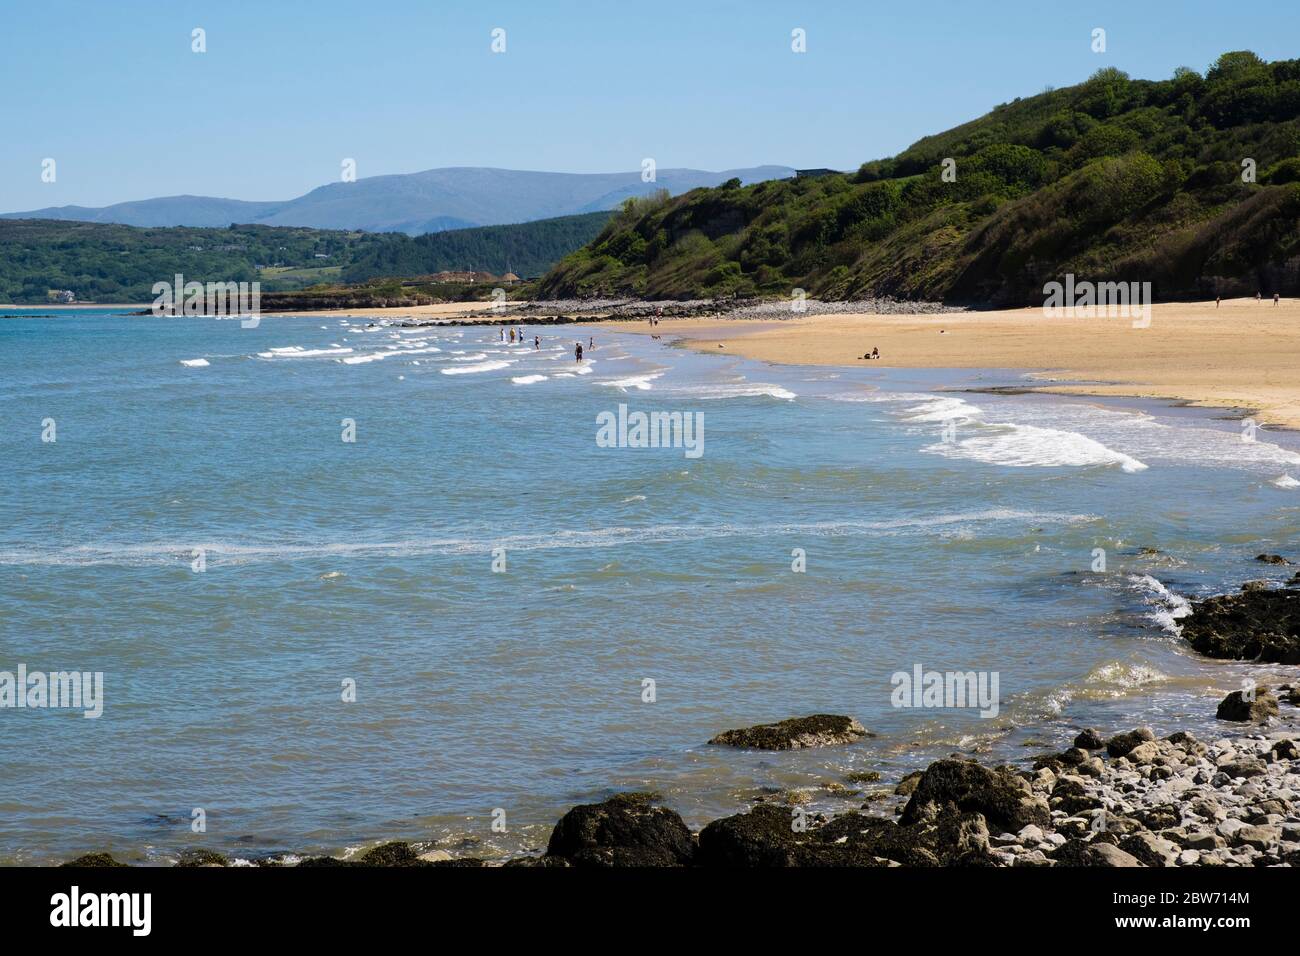 Quelques personnes ont pris des distances sociales en mer sur une plage tranquille pendant le confinement pandémique de la COVID-19 à mi-période de vacances. Benllech Anglesey pays de Galles Royaume-Uni Grande-Bretagne Banque D'Images